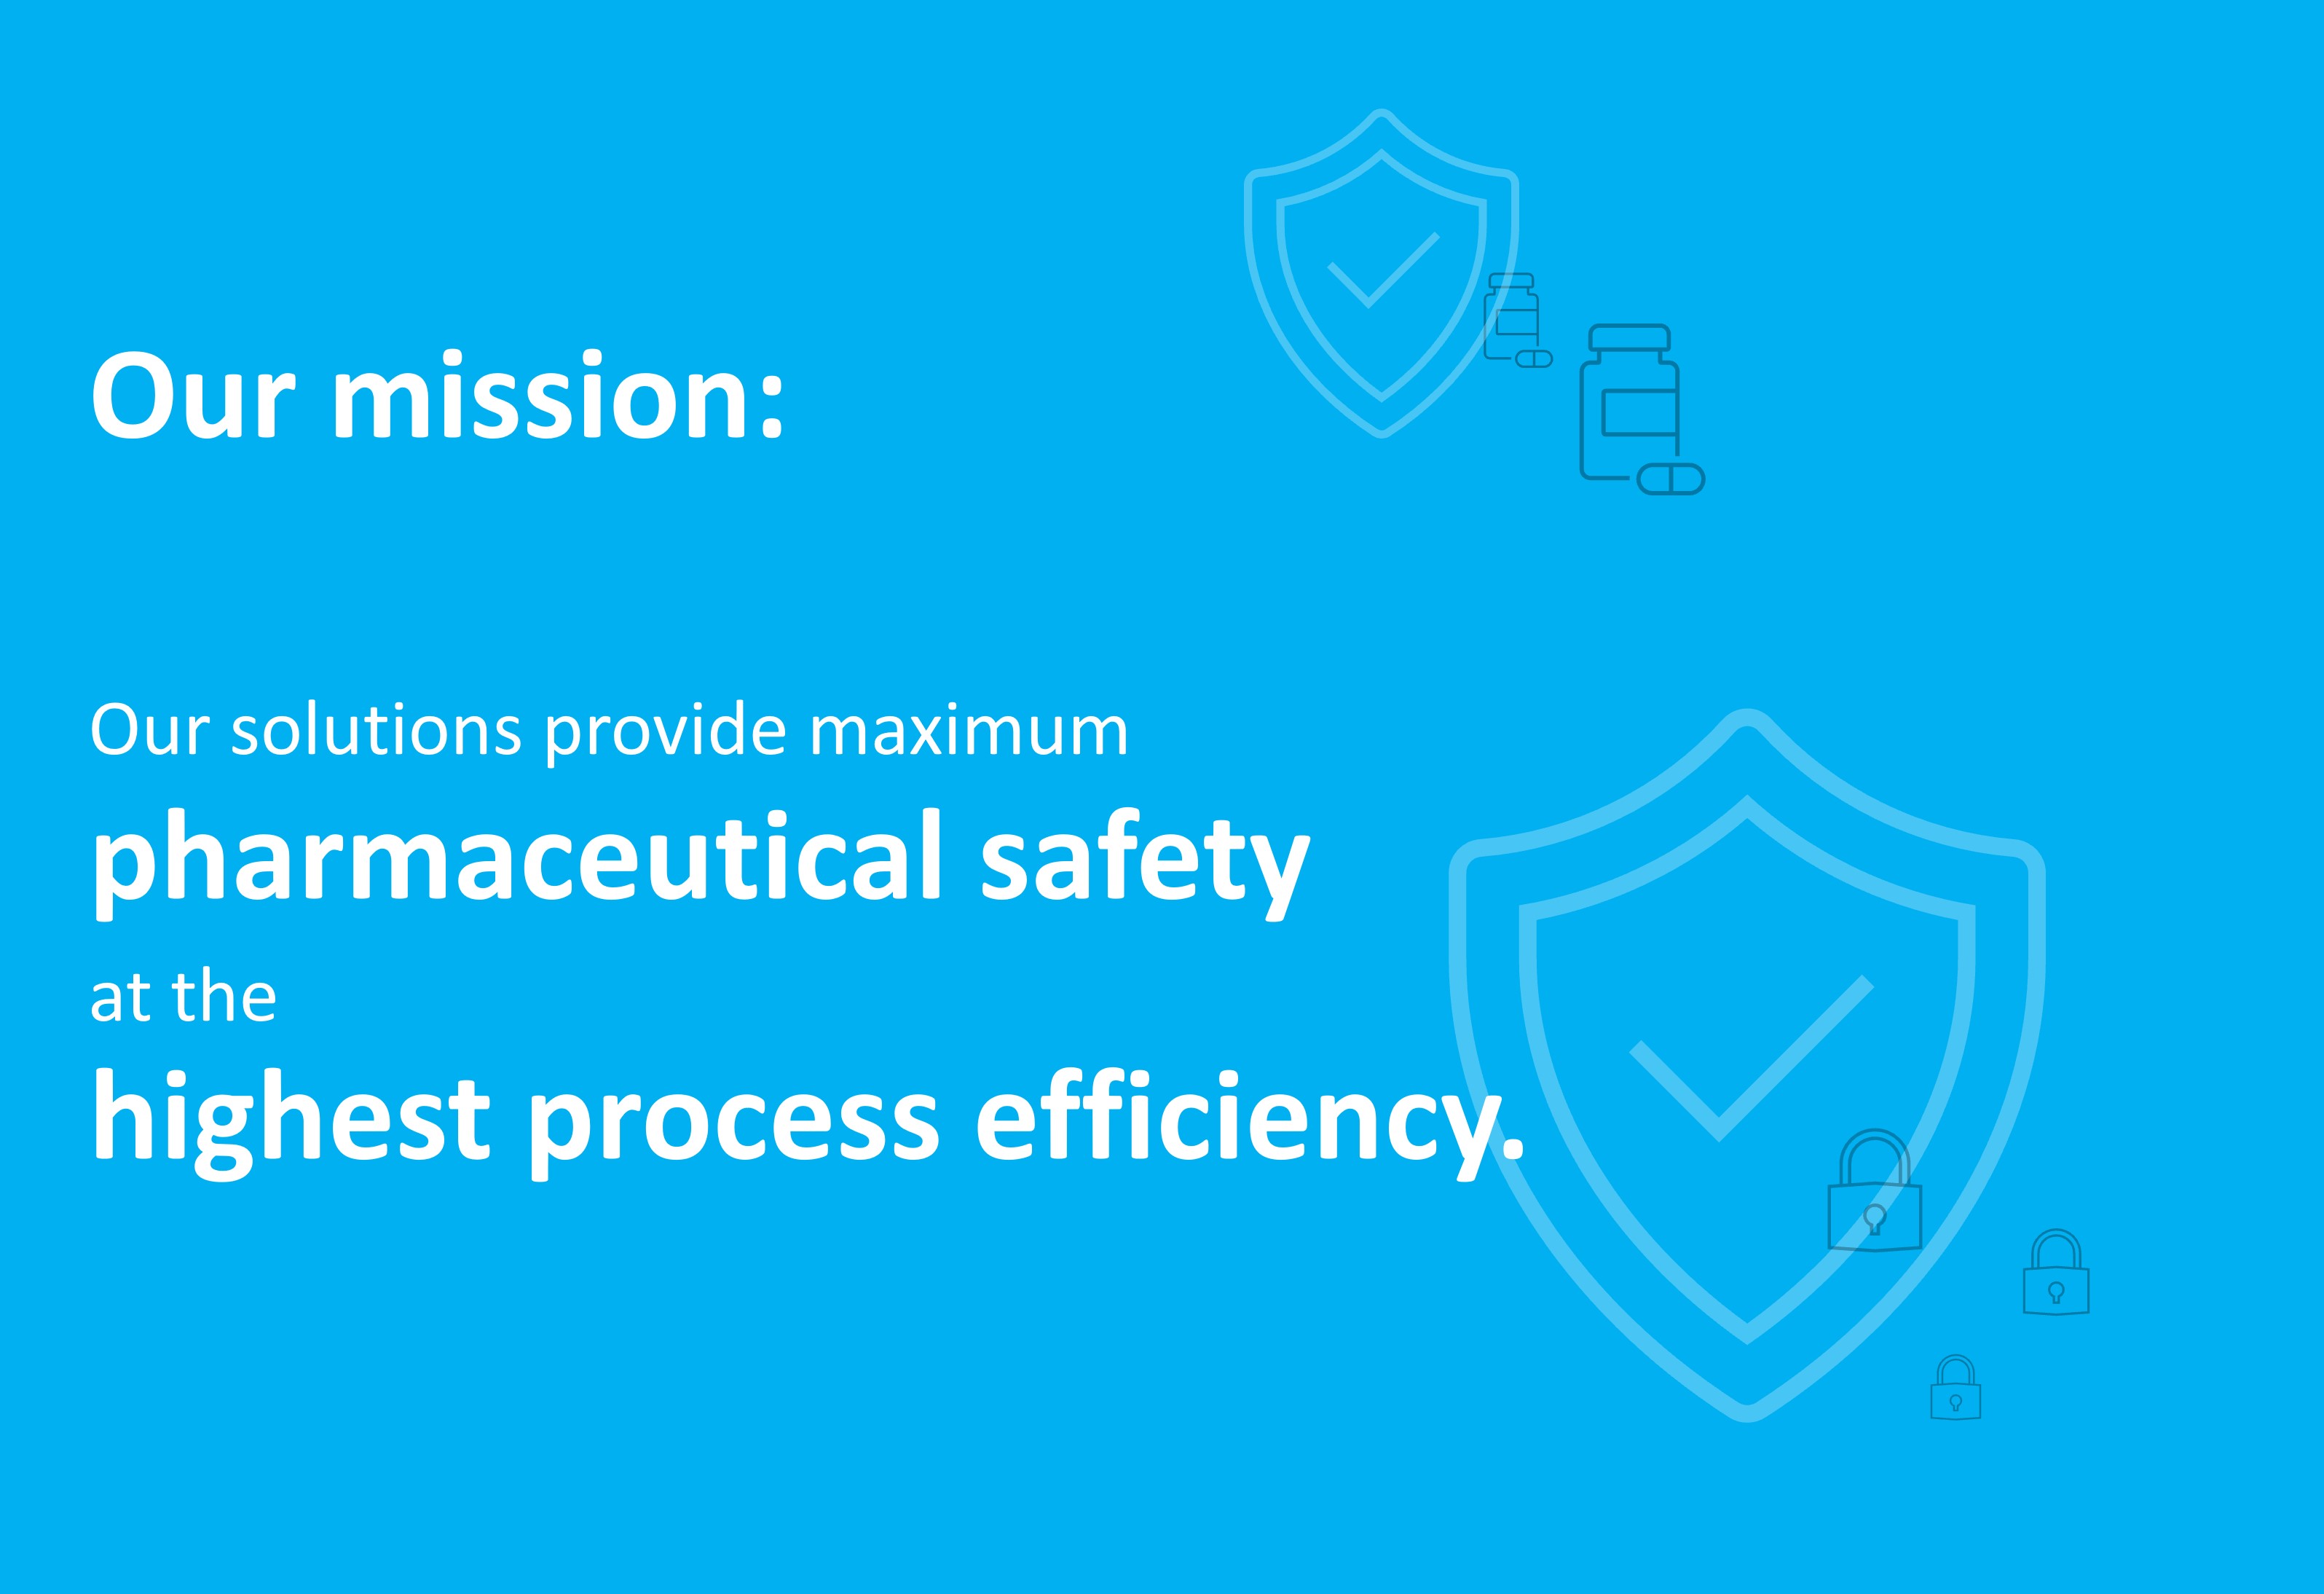 Nuestras soluciones proporcionan la máxima seguridad seguridad farmacéutica con la máxima eficiencia en el proceso